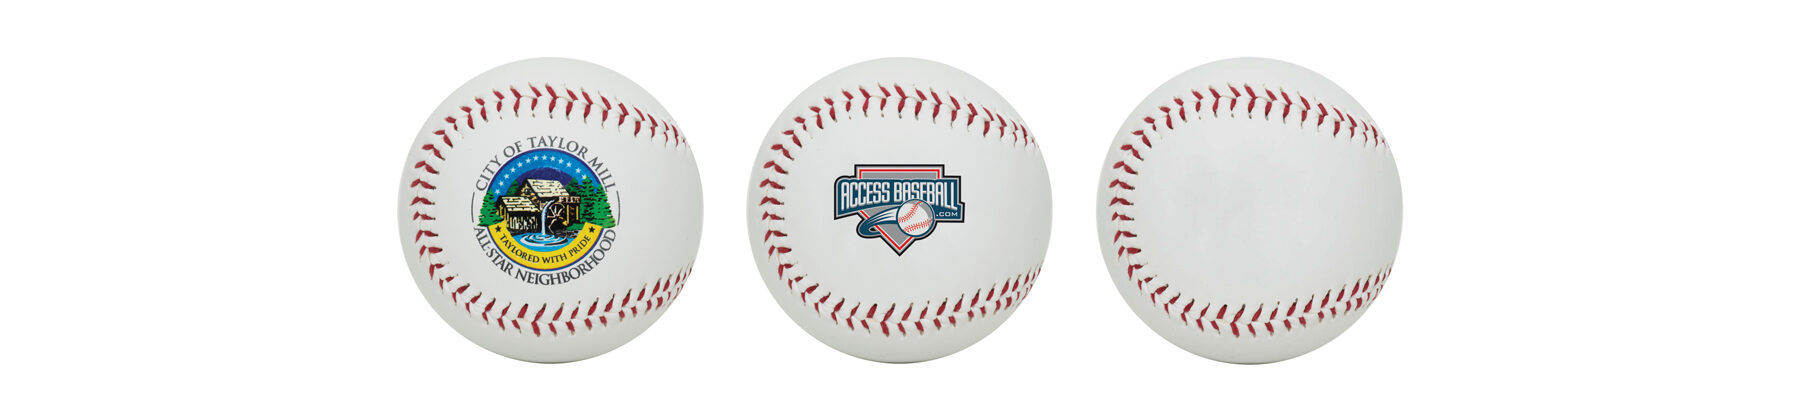 Playable baseballs with custom printed logo.